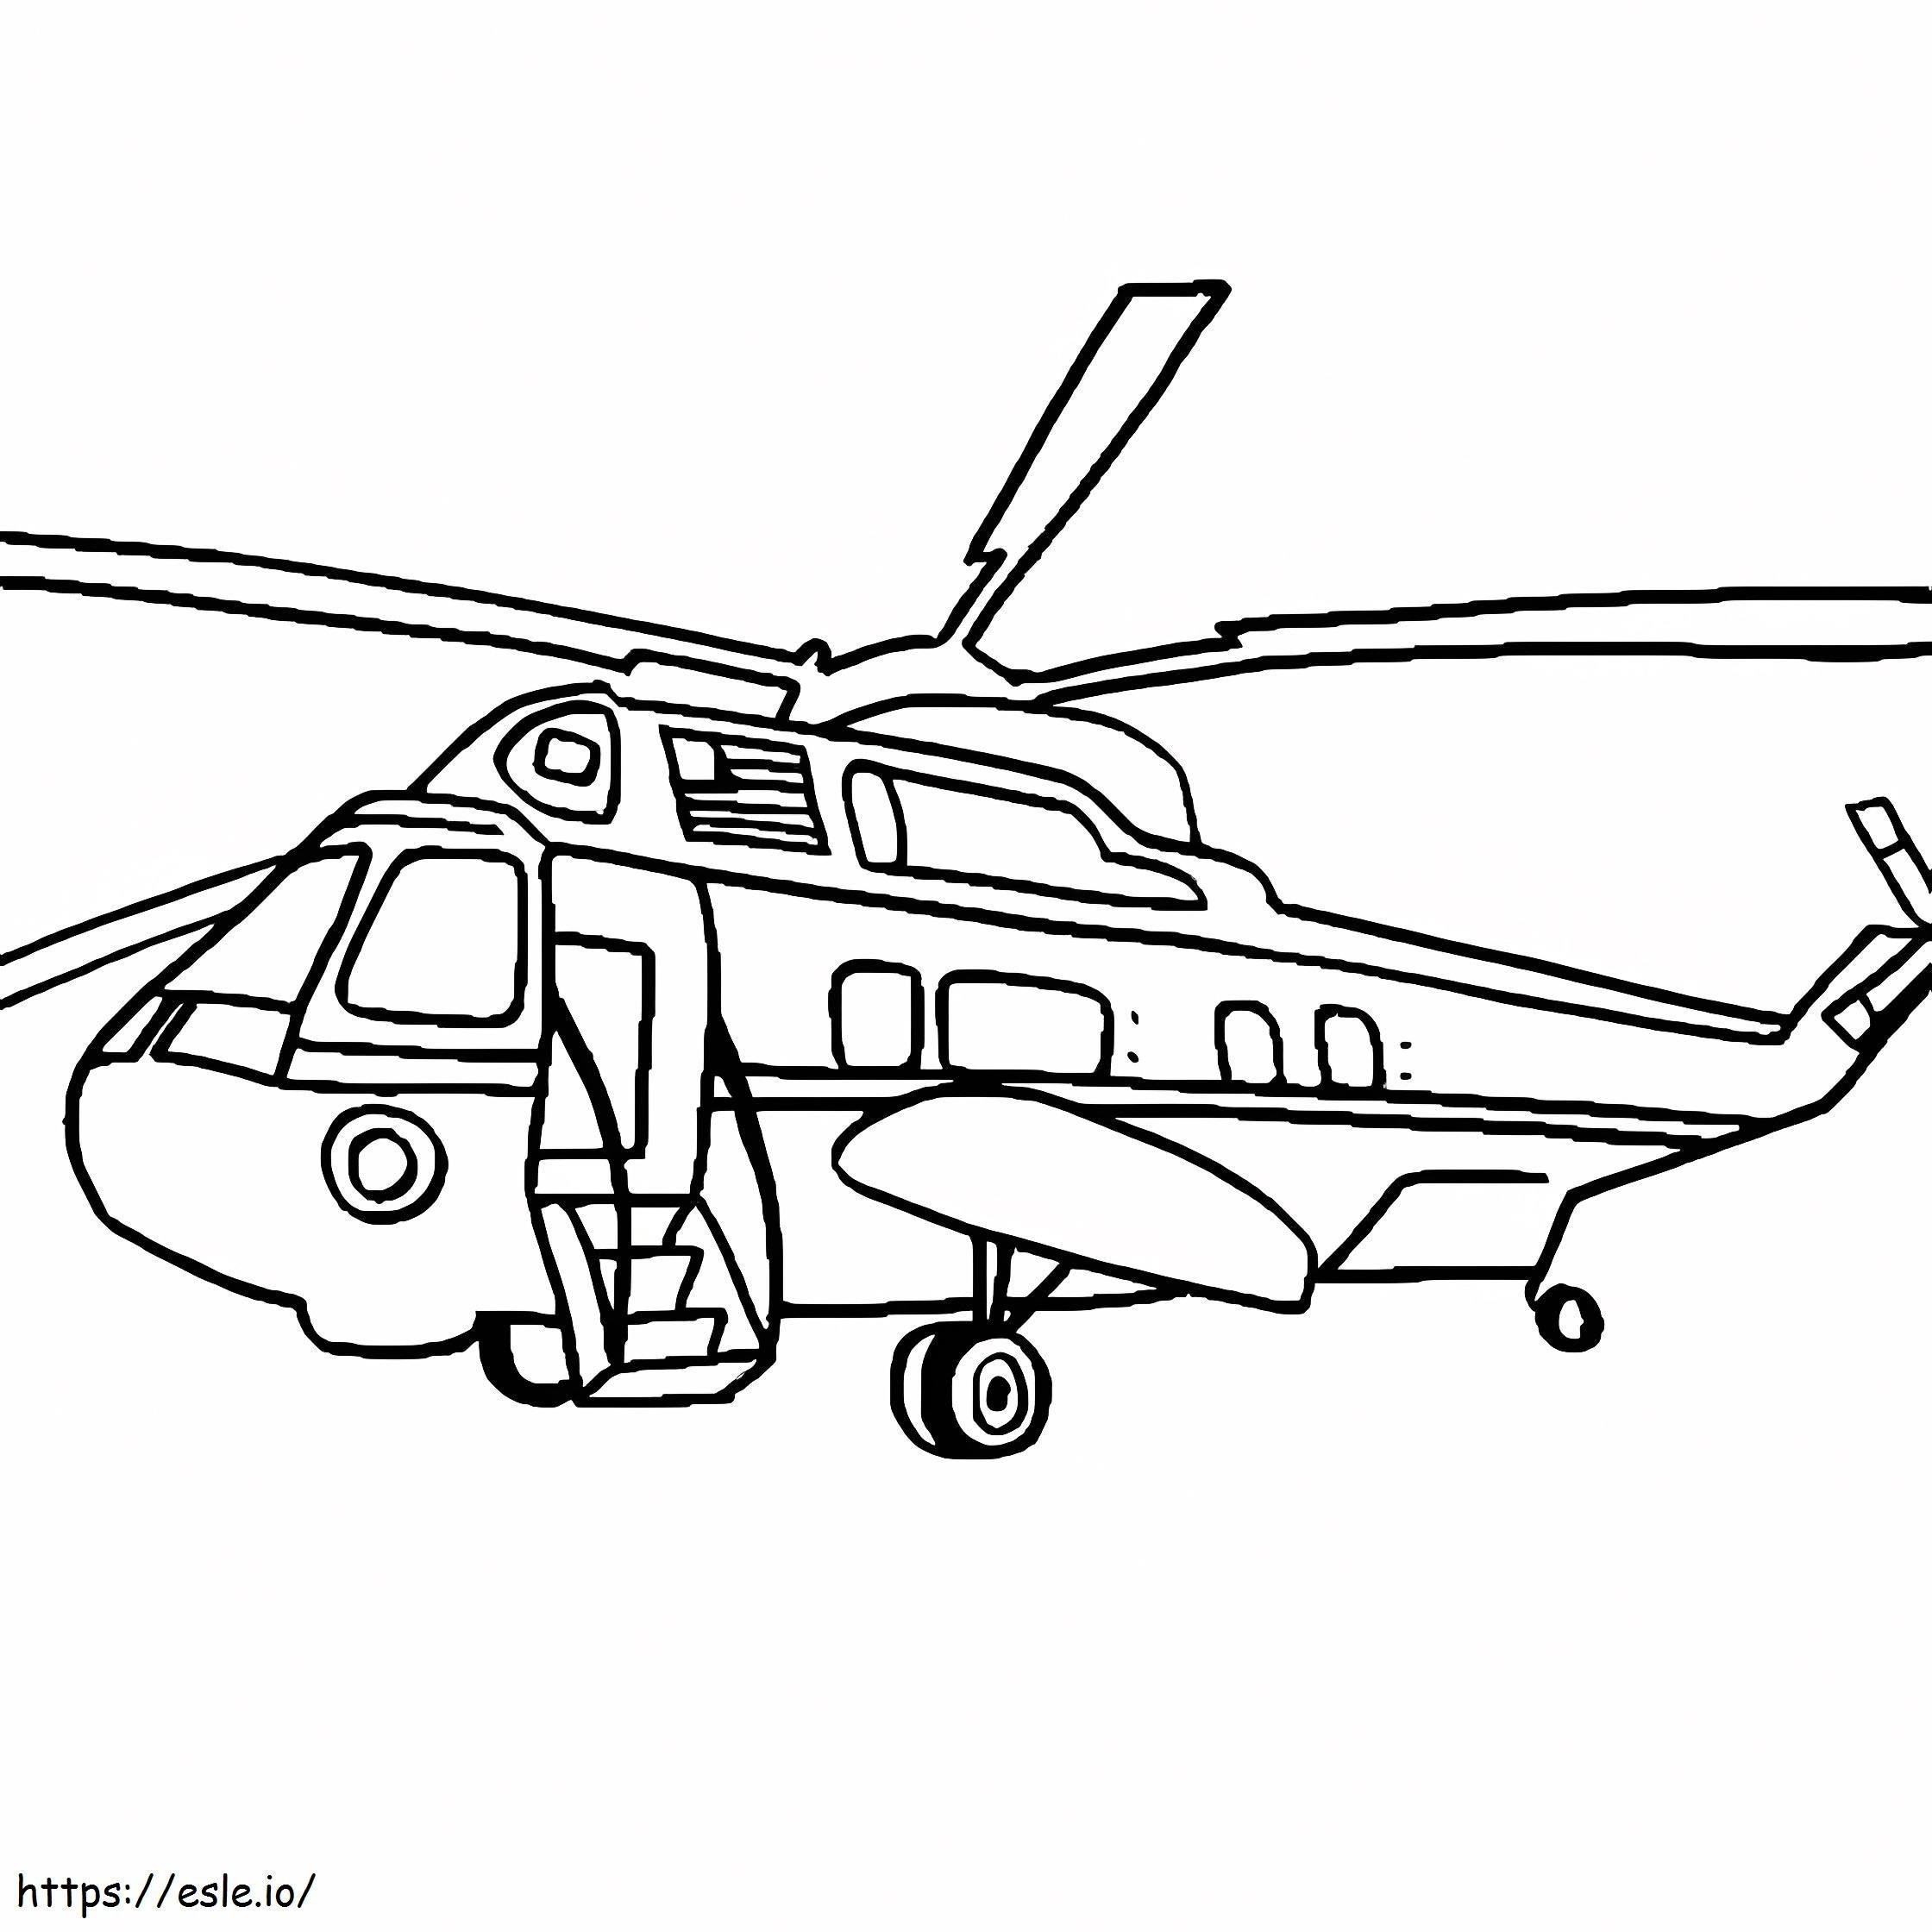 Helicóptero Blackhawk para colorear